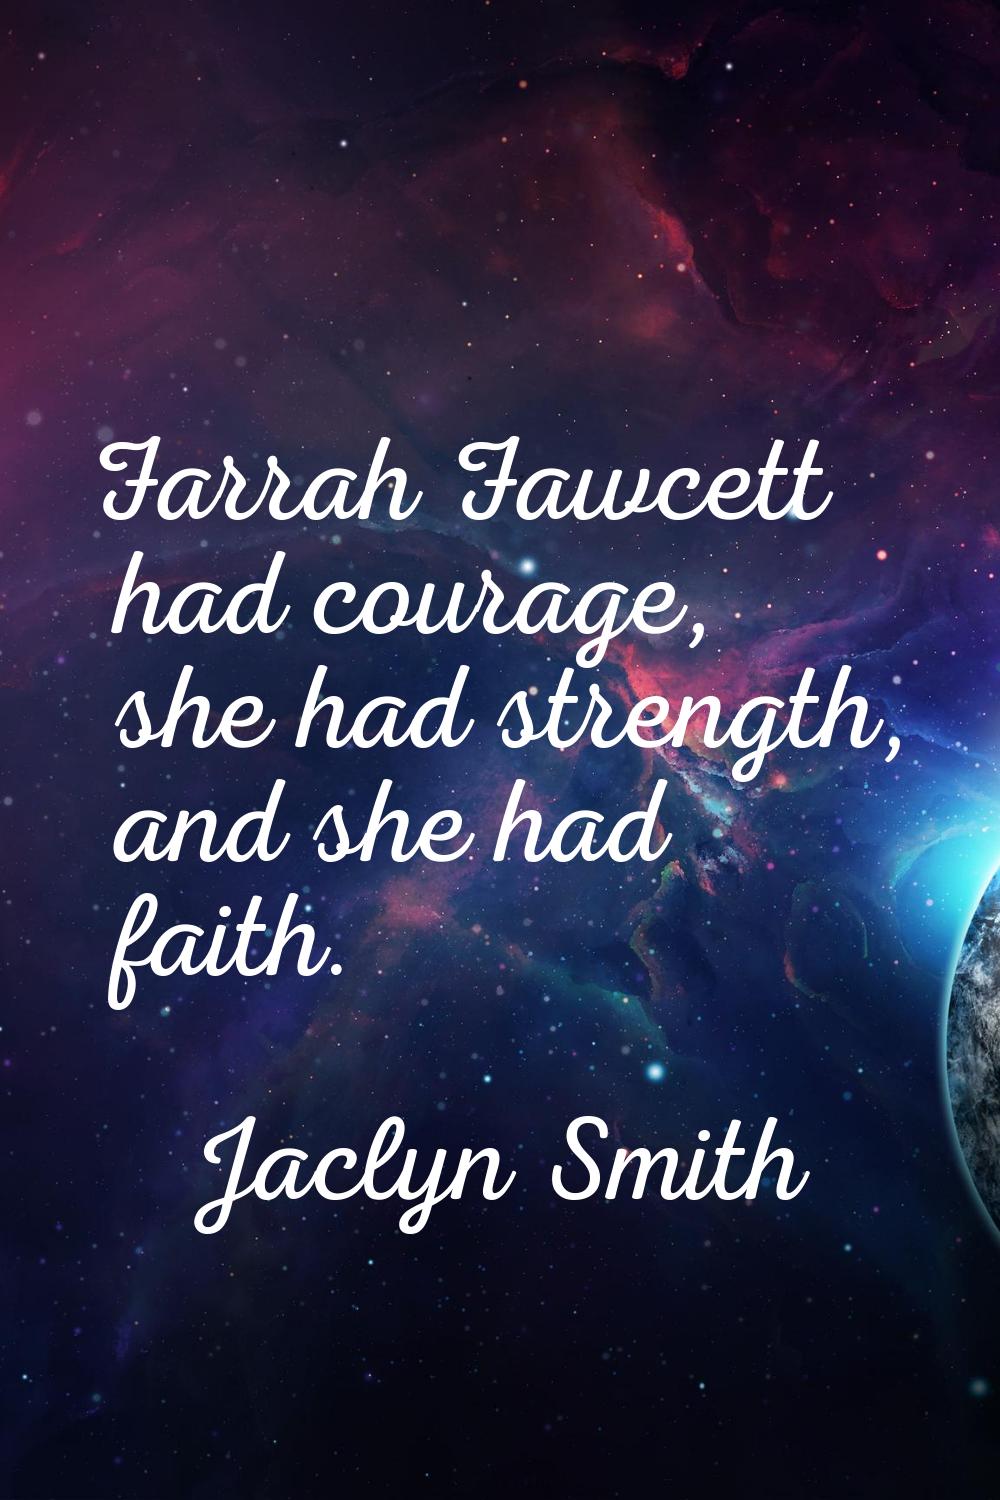 Farrah Fawcett had courage, she had strength, and she had faith.